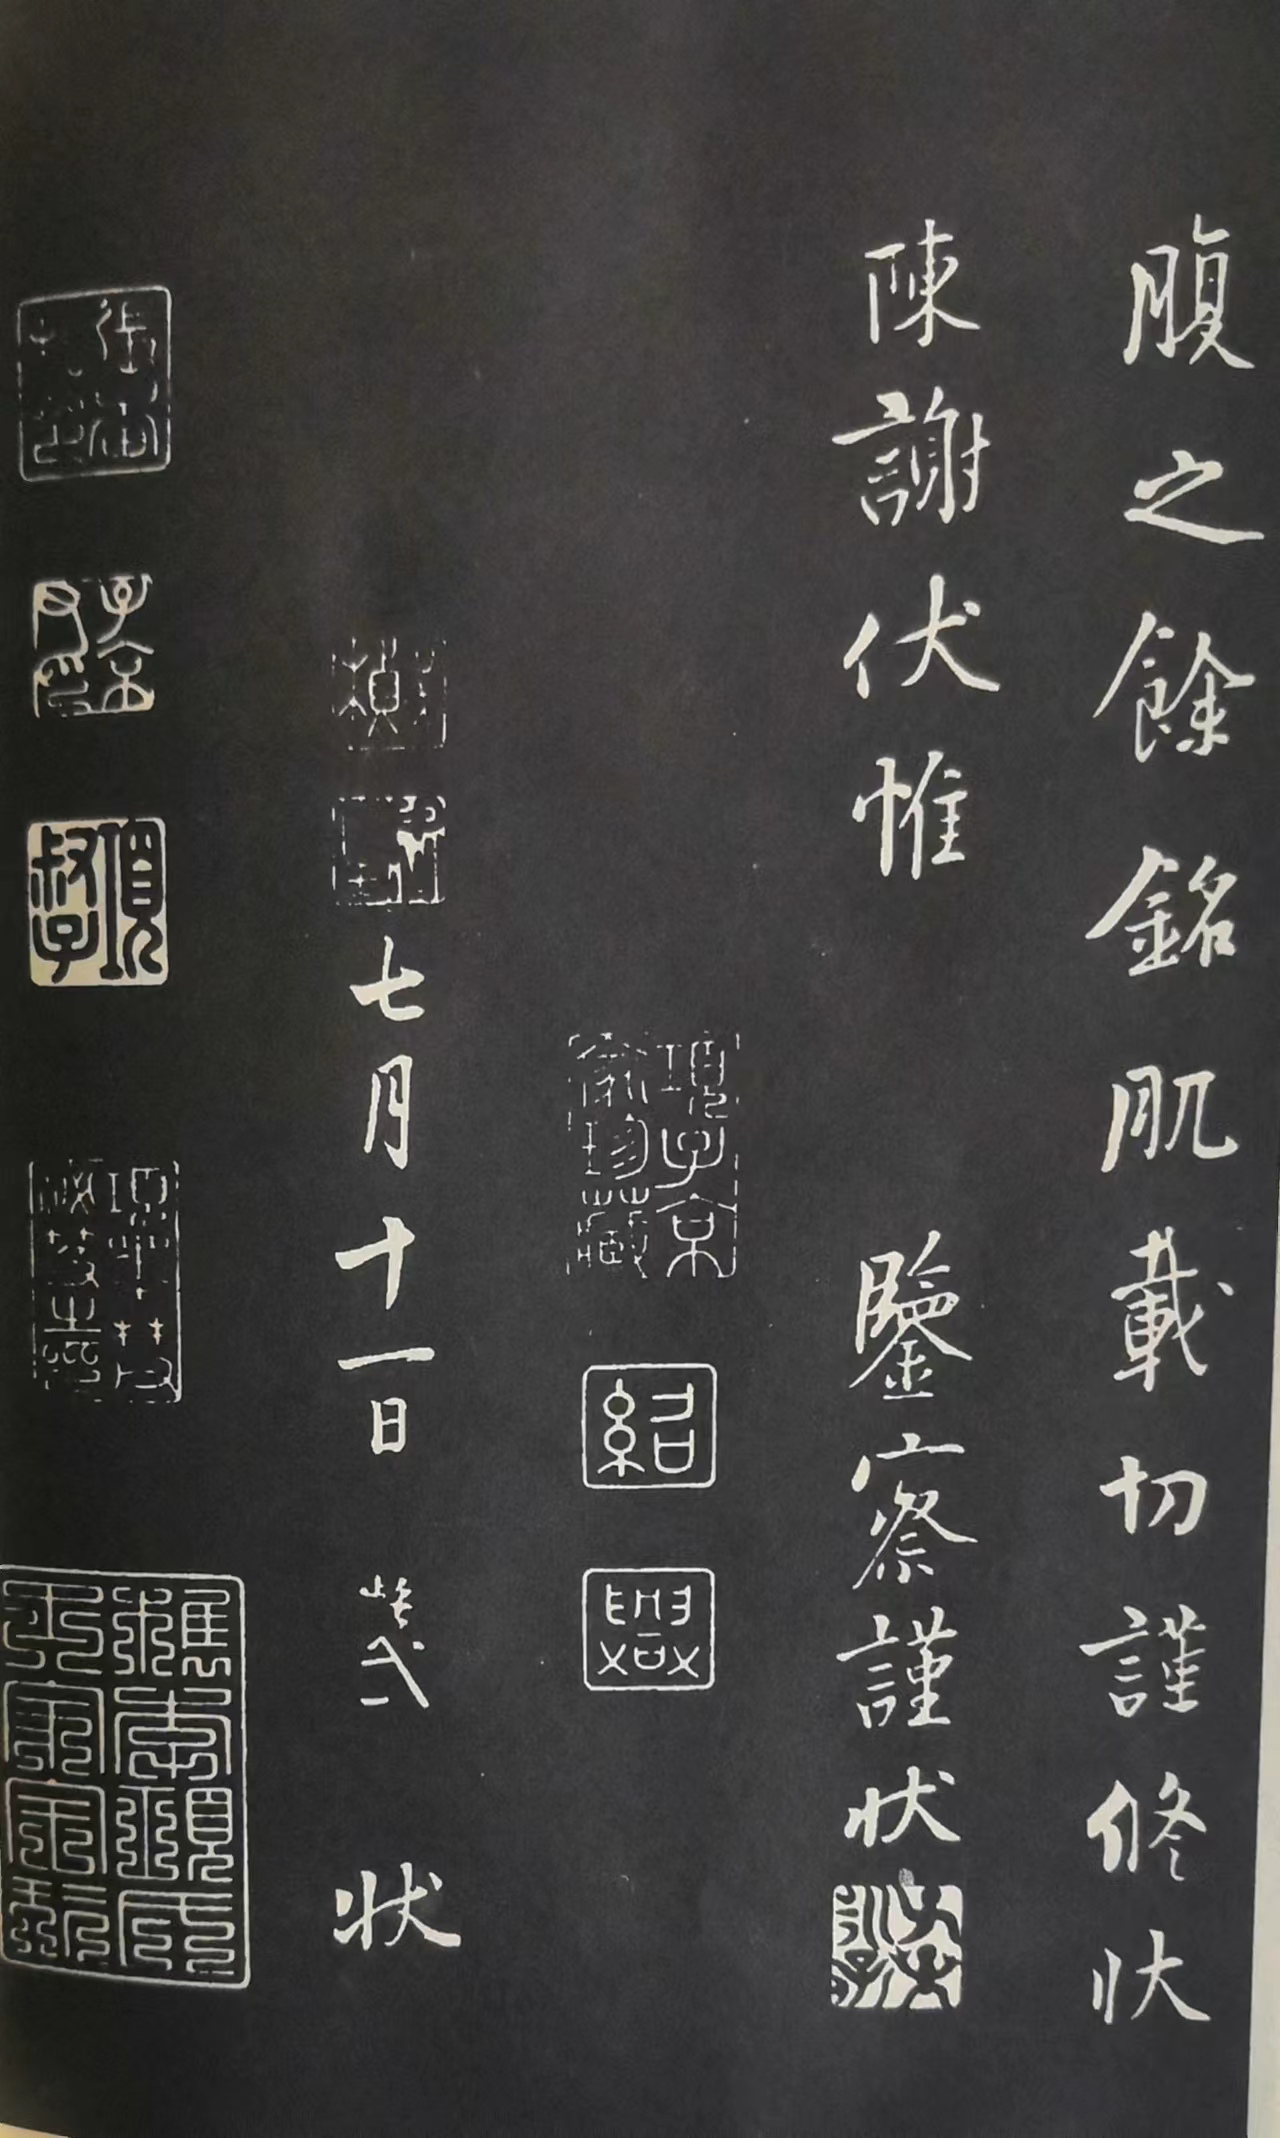 五代杨风子的《韭花帖》被誉为 天下第五行书当得起吗?